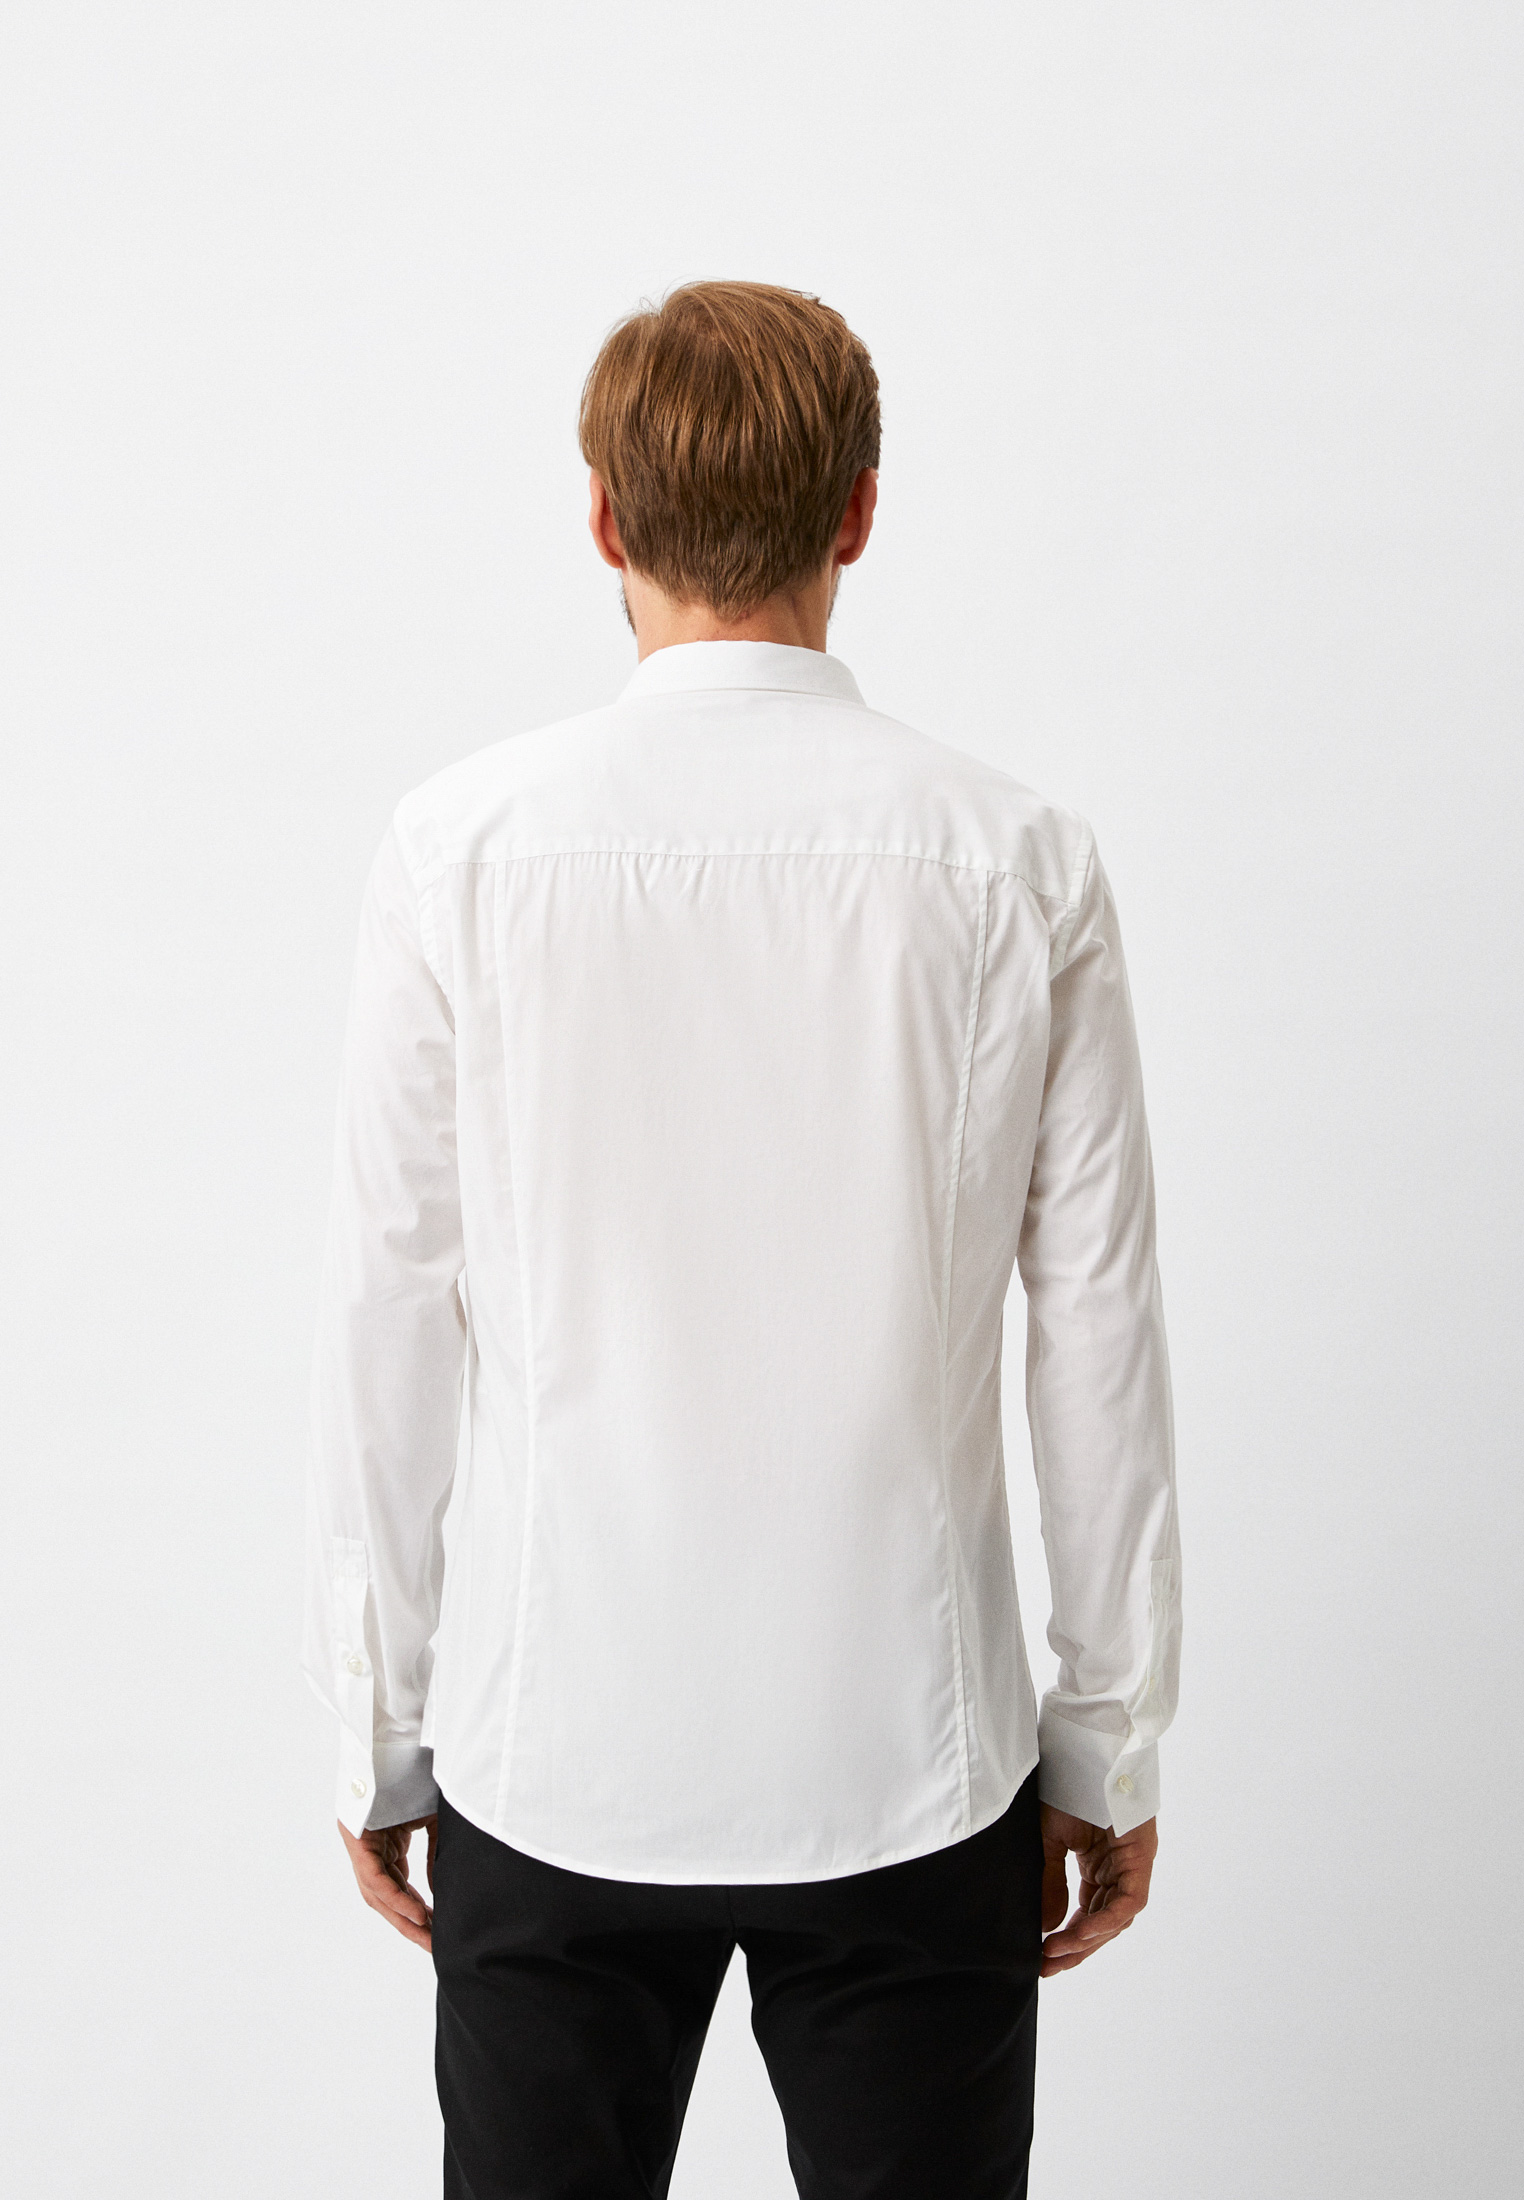 Рубашка с длинным рукавом Bikkembergs (Биккембергс) C C 011 03 S 2931: изображение 18